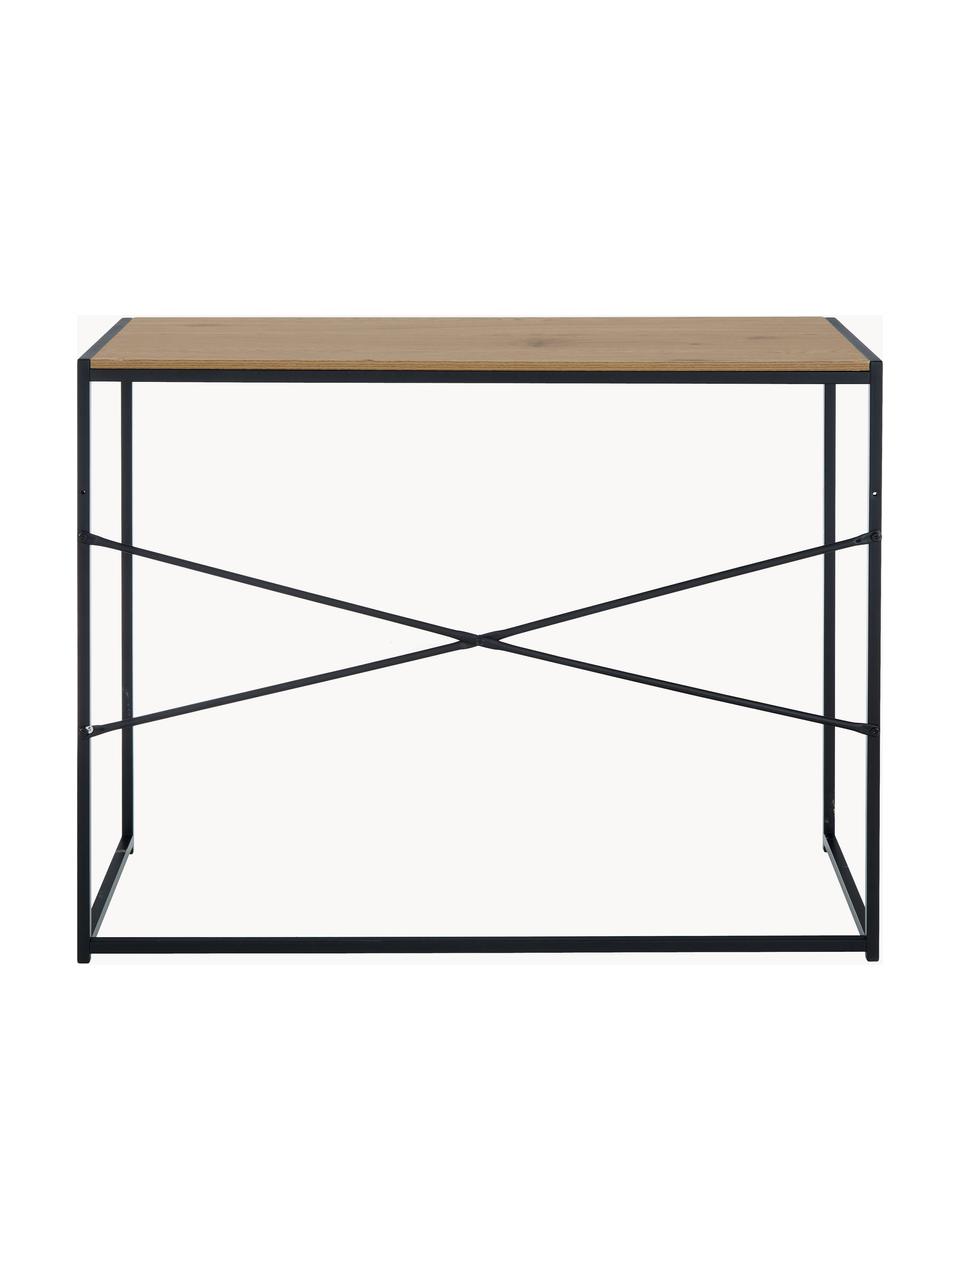 Úzký psací stůl ze dřeva a kovu Seaford, Béžová ve vzhledu dřeva, černá, Š 100 cm, H 45 cm